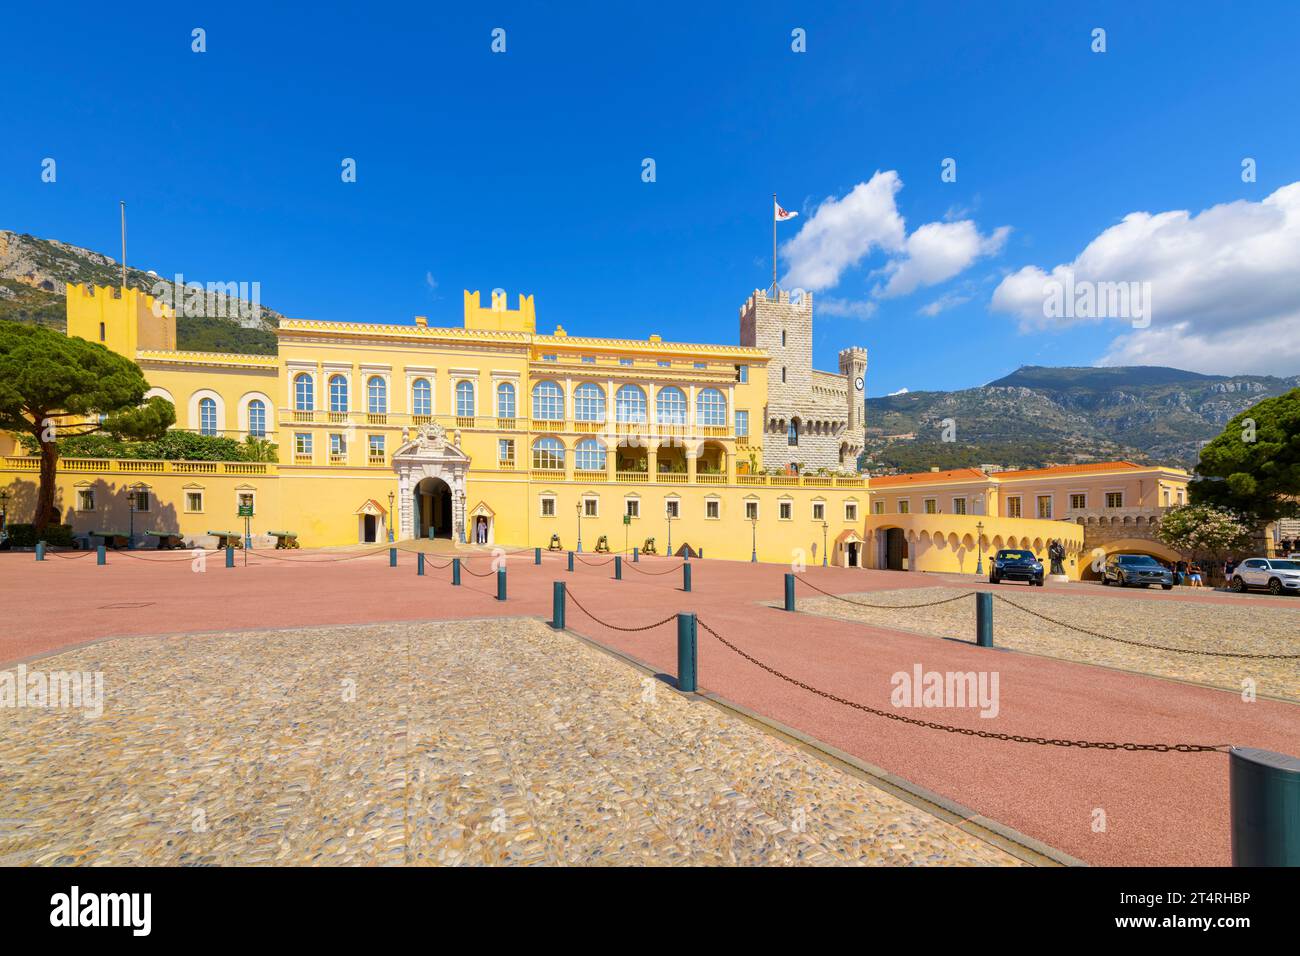 Der historische Fürstenpalast von Monaco am Place du Palais am Felsen in Monte Carlo, Monaco. Stockfoto